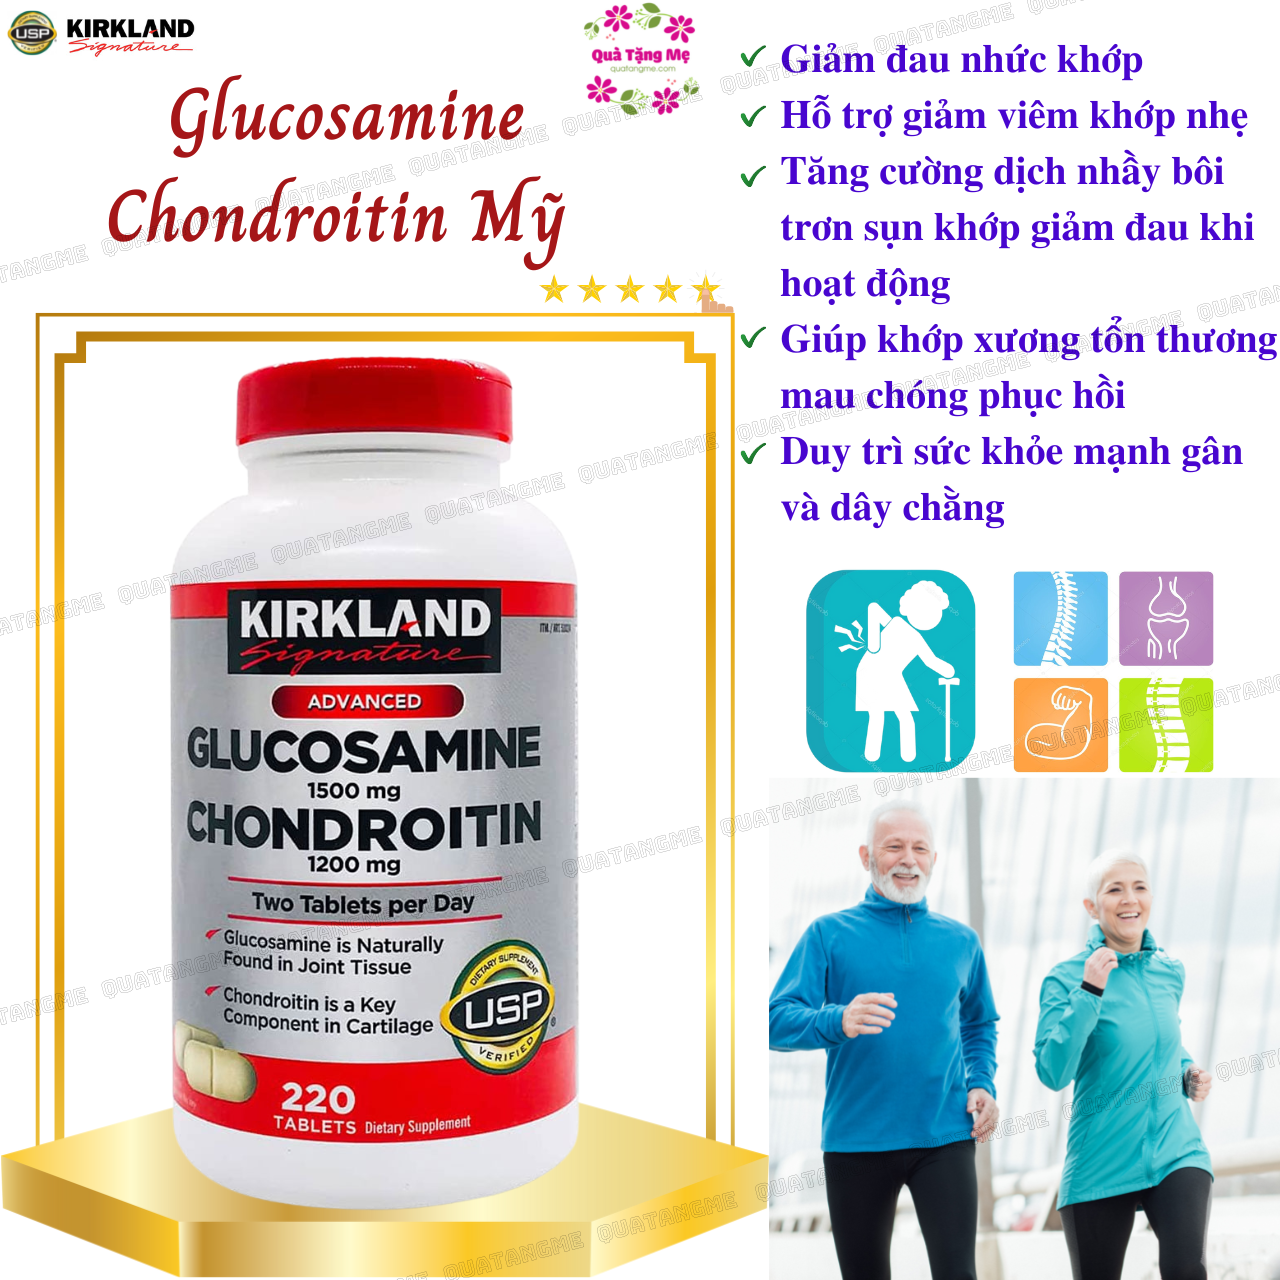 Glucosamine 1500mg Chondroitin 1200mg Kirkland Signature Mỹ- Giảm các triệu chứng đau nhức xương khớp hiệu quả - QuaTangMe Extaste